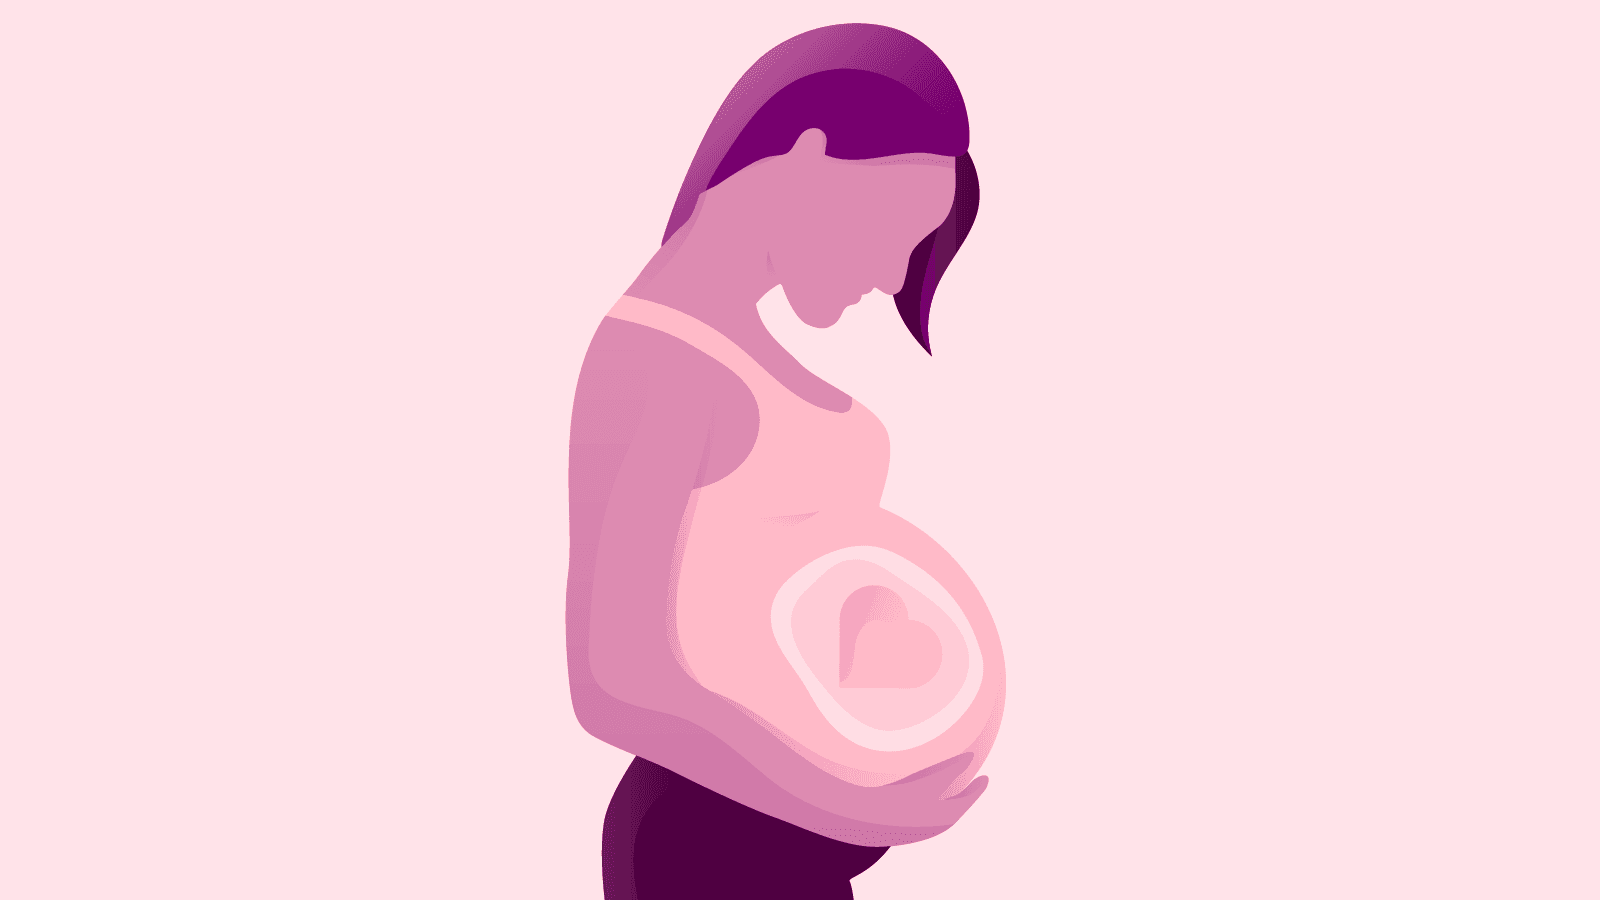 Si vous êtes enceinte, ce que vous mangez et buvez peut également affecter votre bébé. Voici ce que vous devez savoir concernant la consommation d’alcool durant la grossesse.